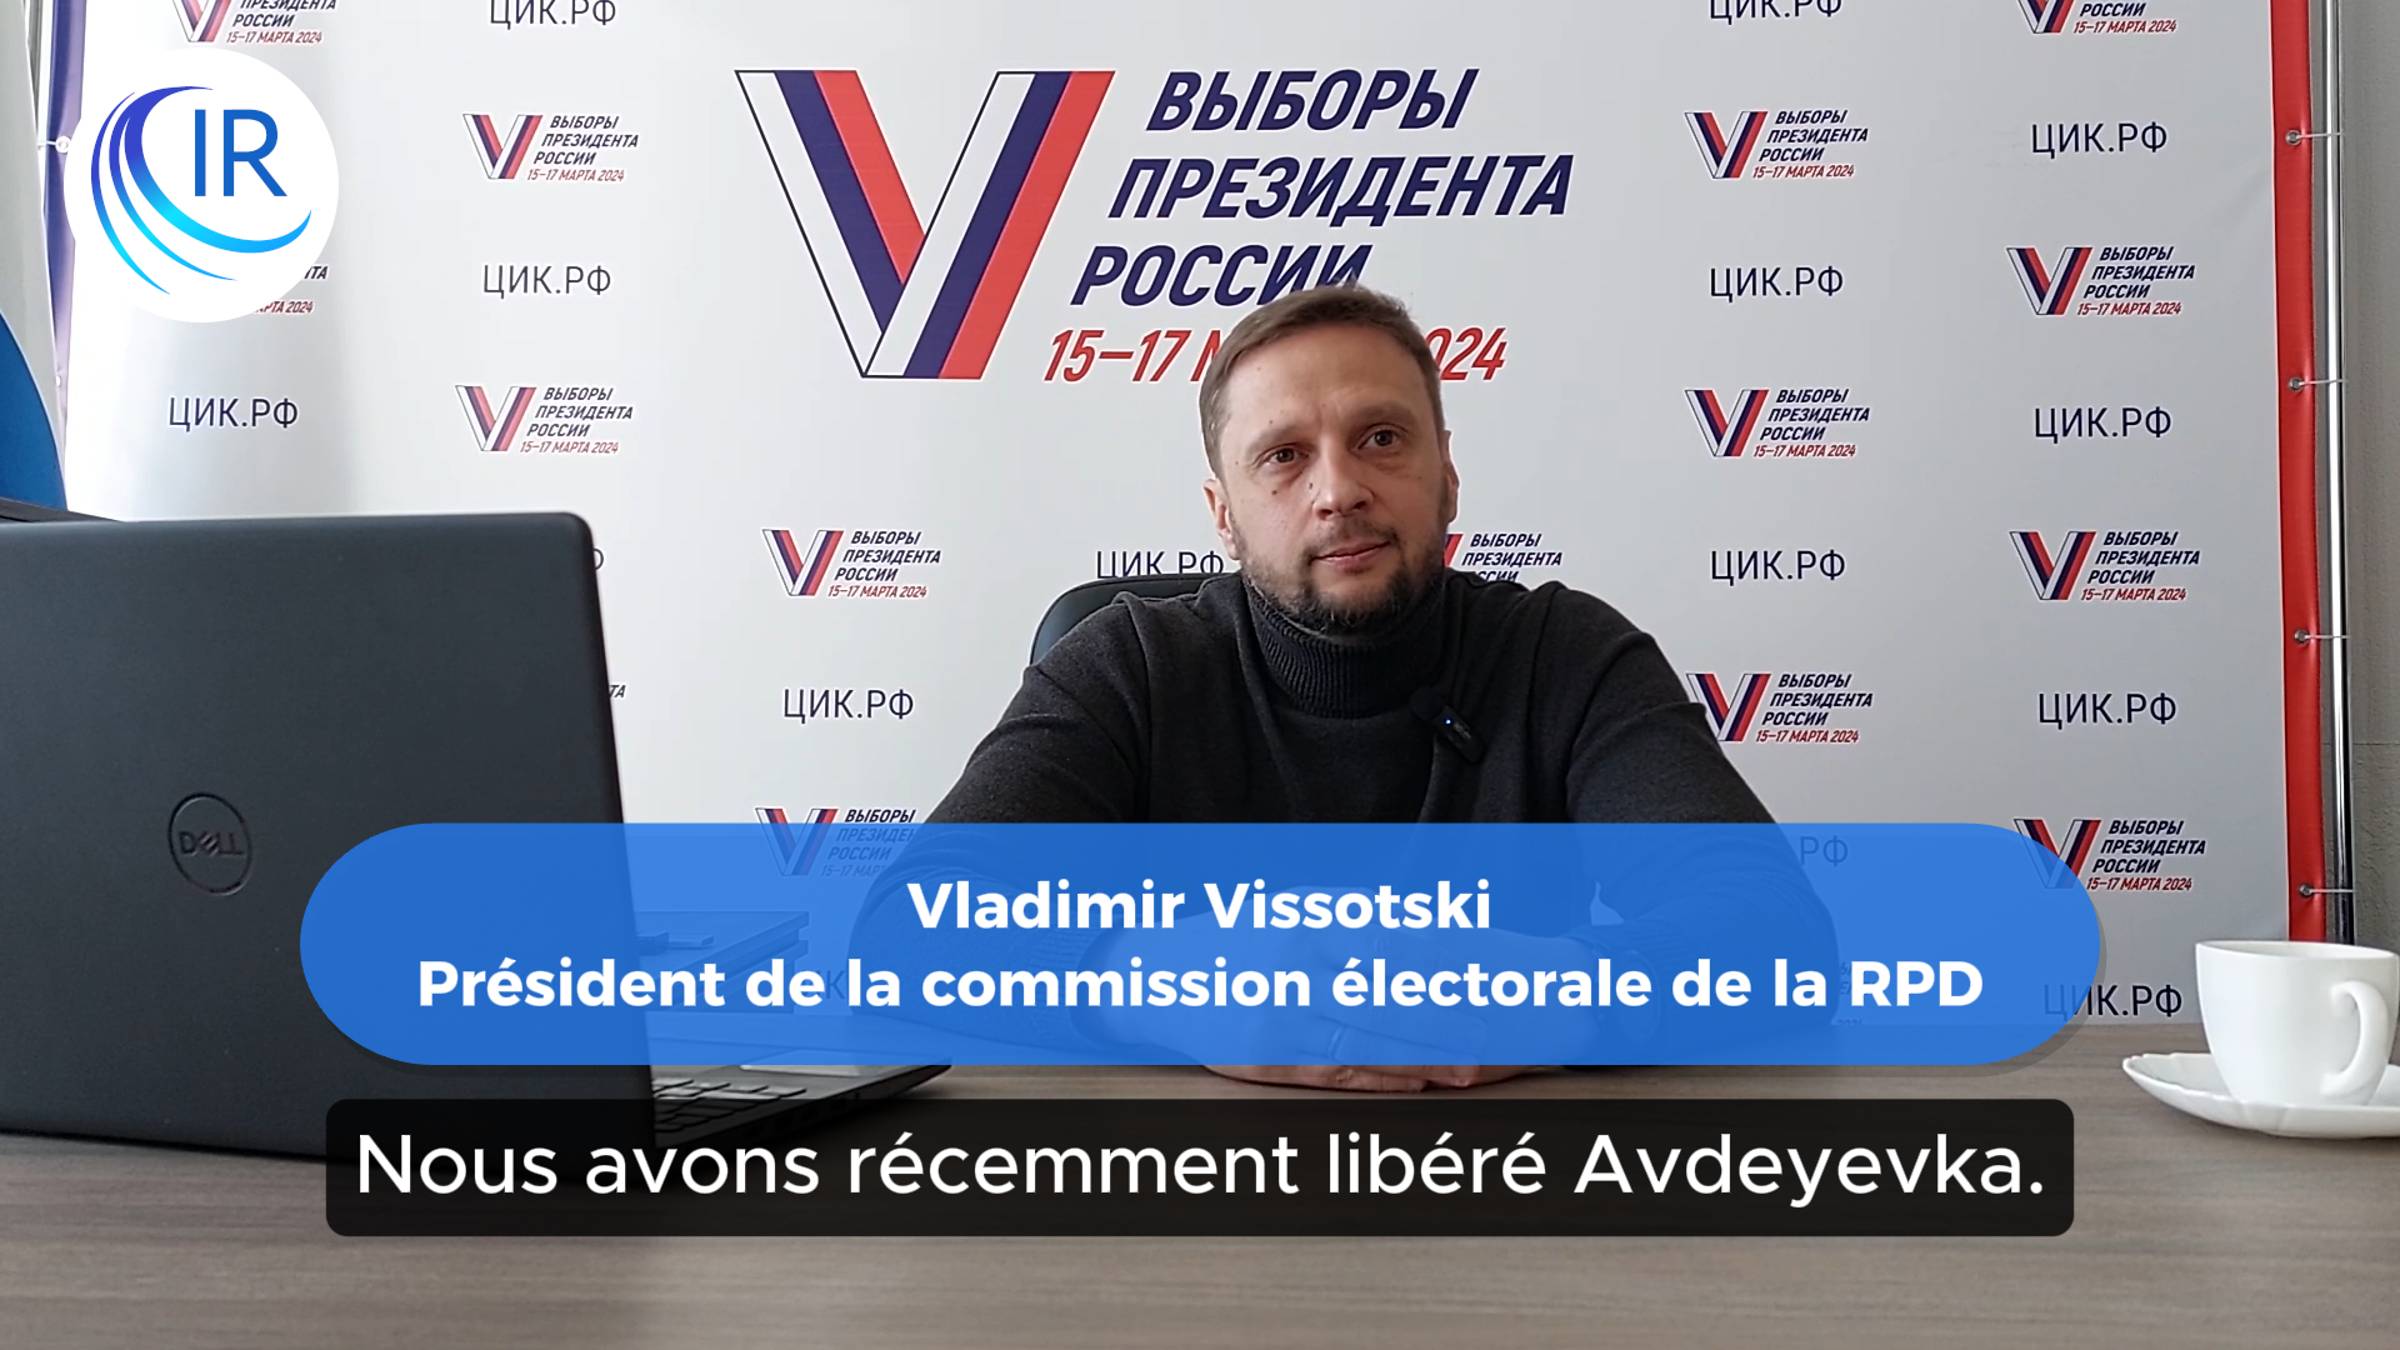 Les habitants d’Avdeyevka pourront voter lors des élections présidentielles russes